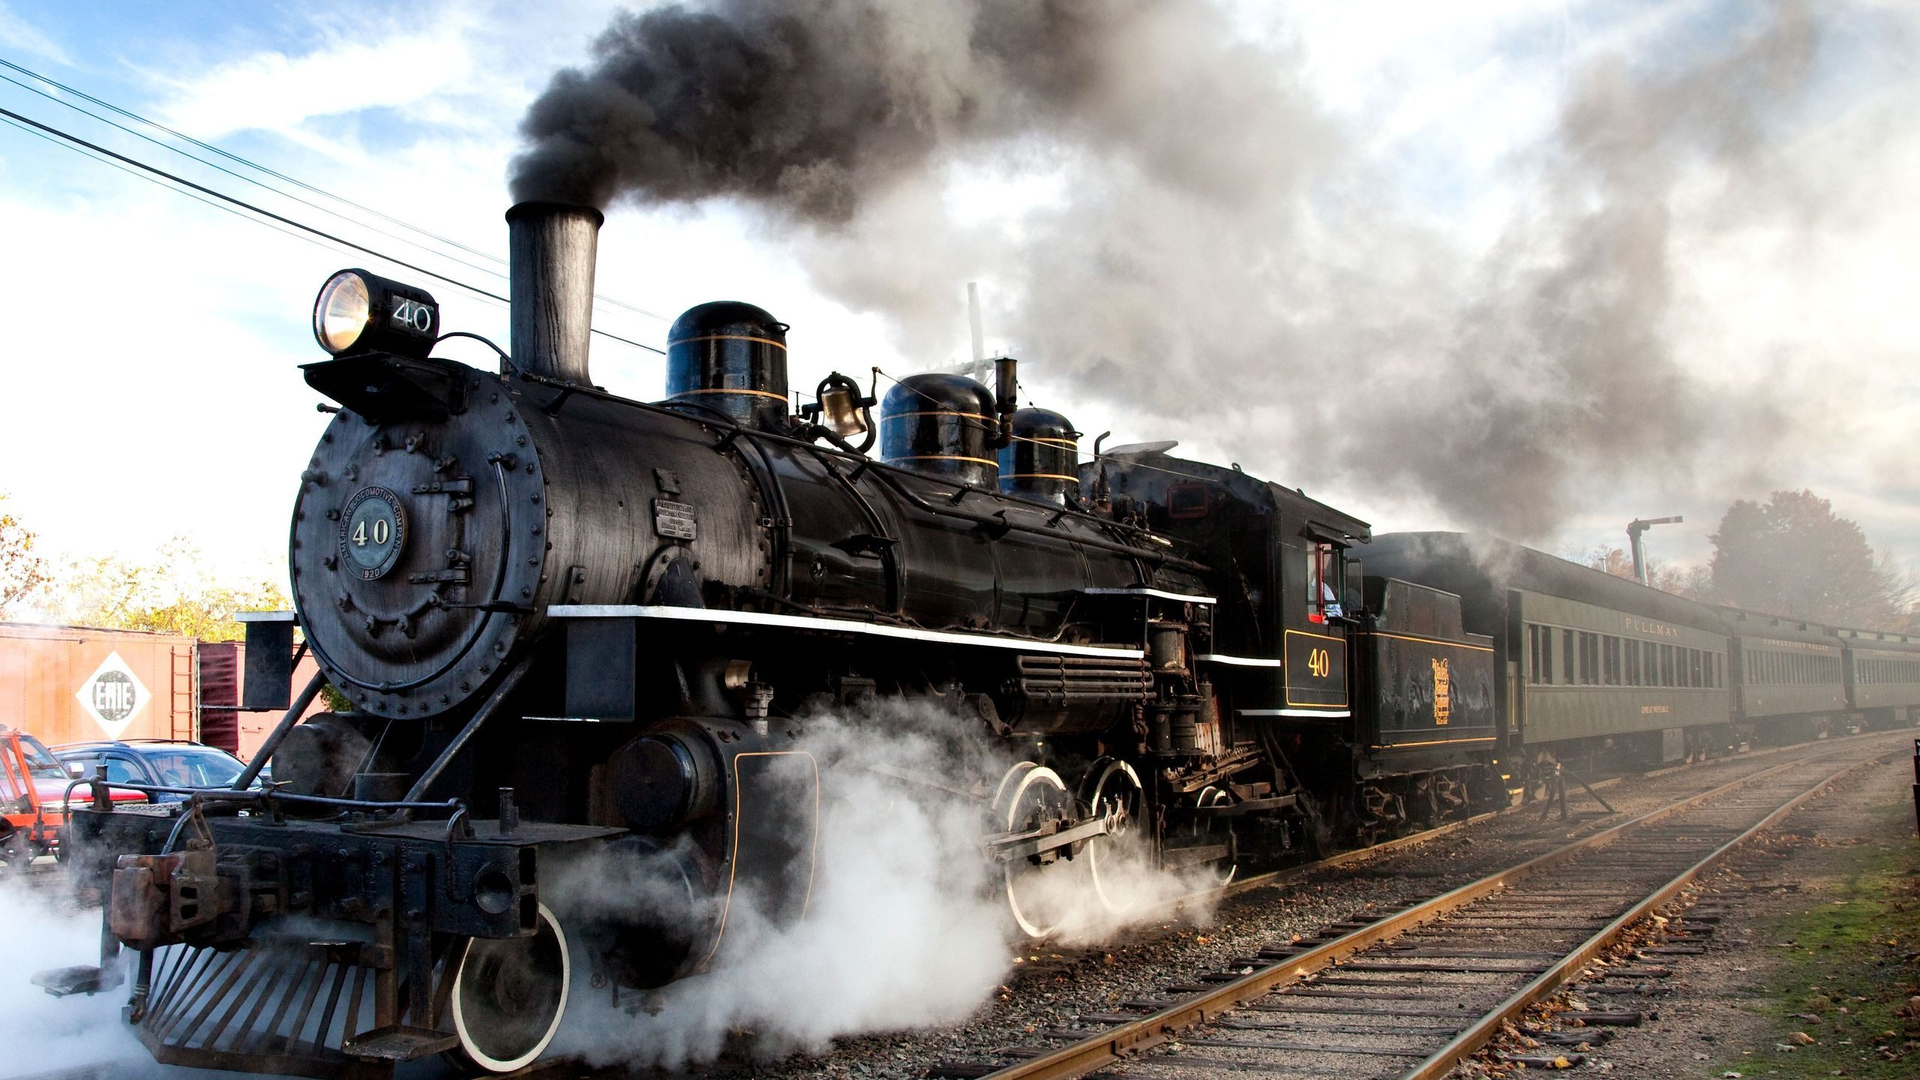 1920x1080 Download Steam Engine Train, Steam, Engine, Train Wallpaper in Resoluti